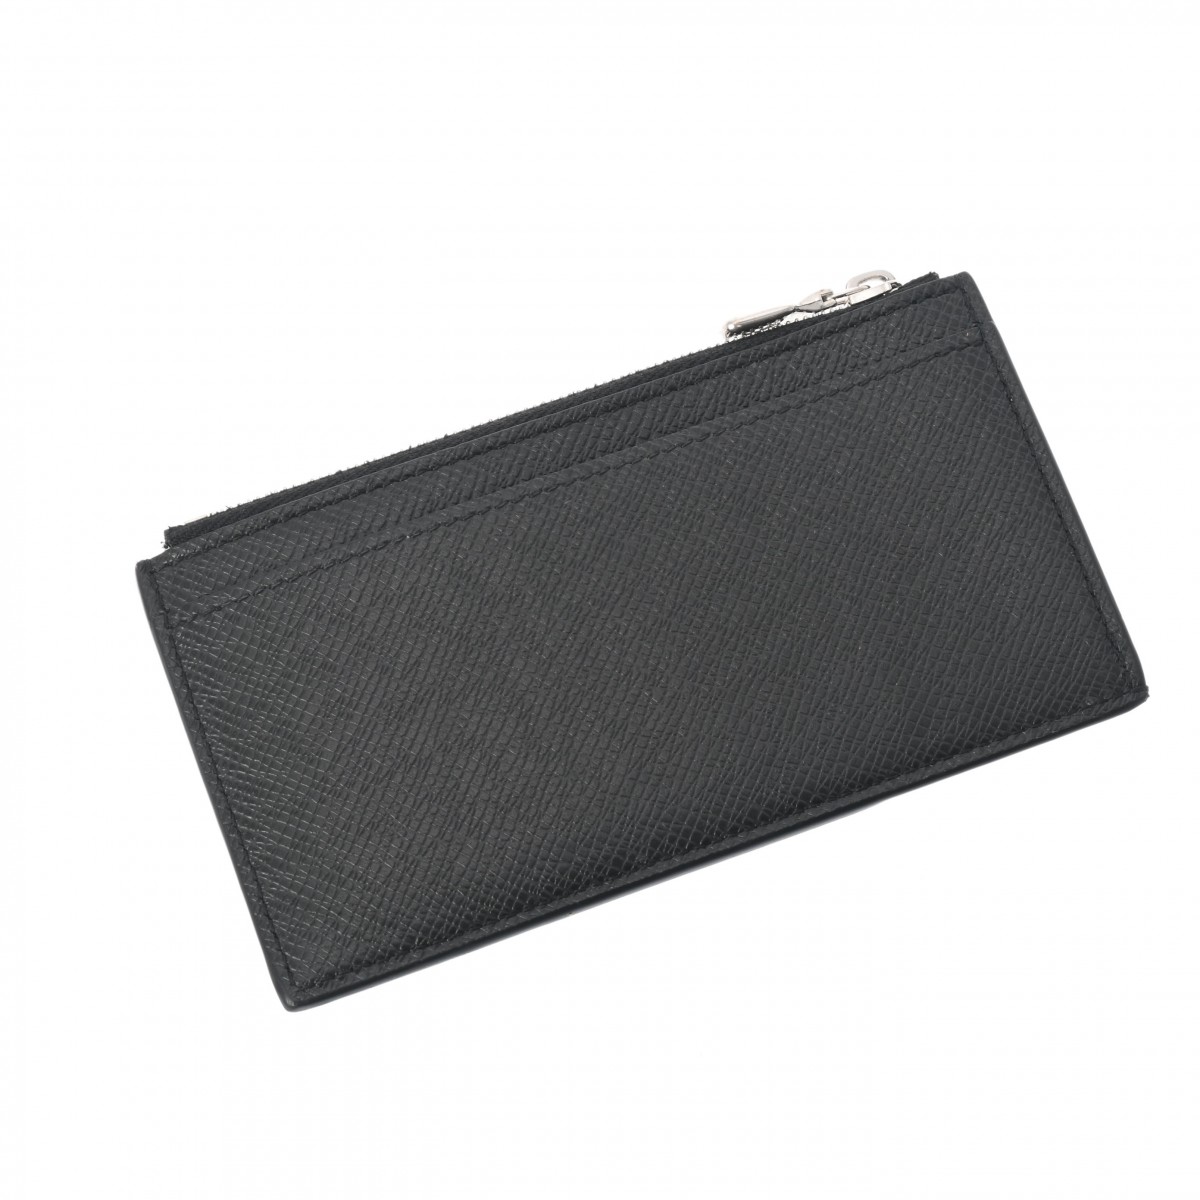 ルイ ヴィトン タイガ コインカードホルダー ブラック M62914 レザー メンズ 財布 【中古】【purse】